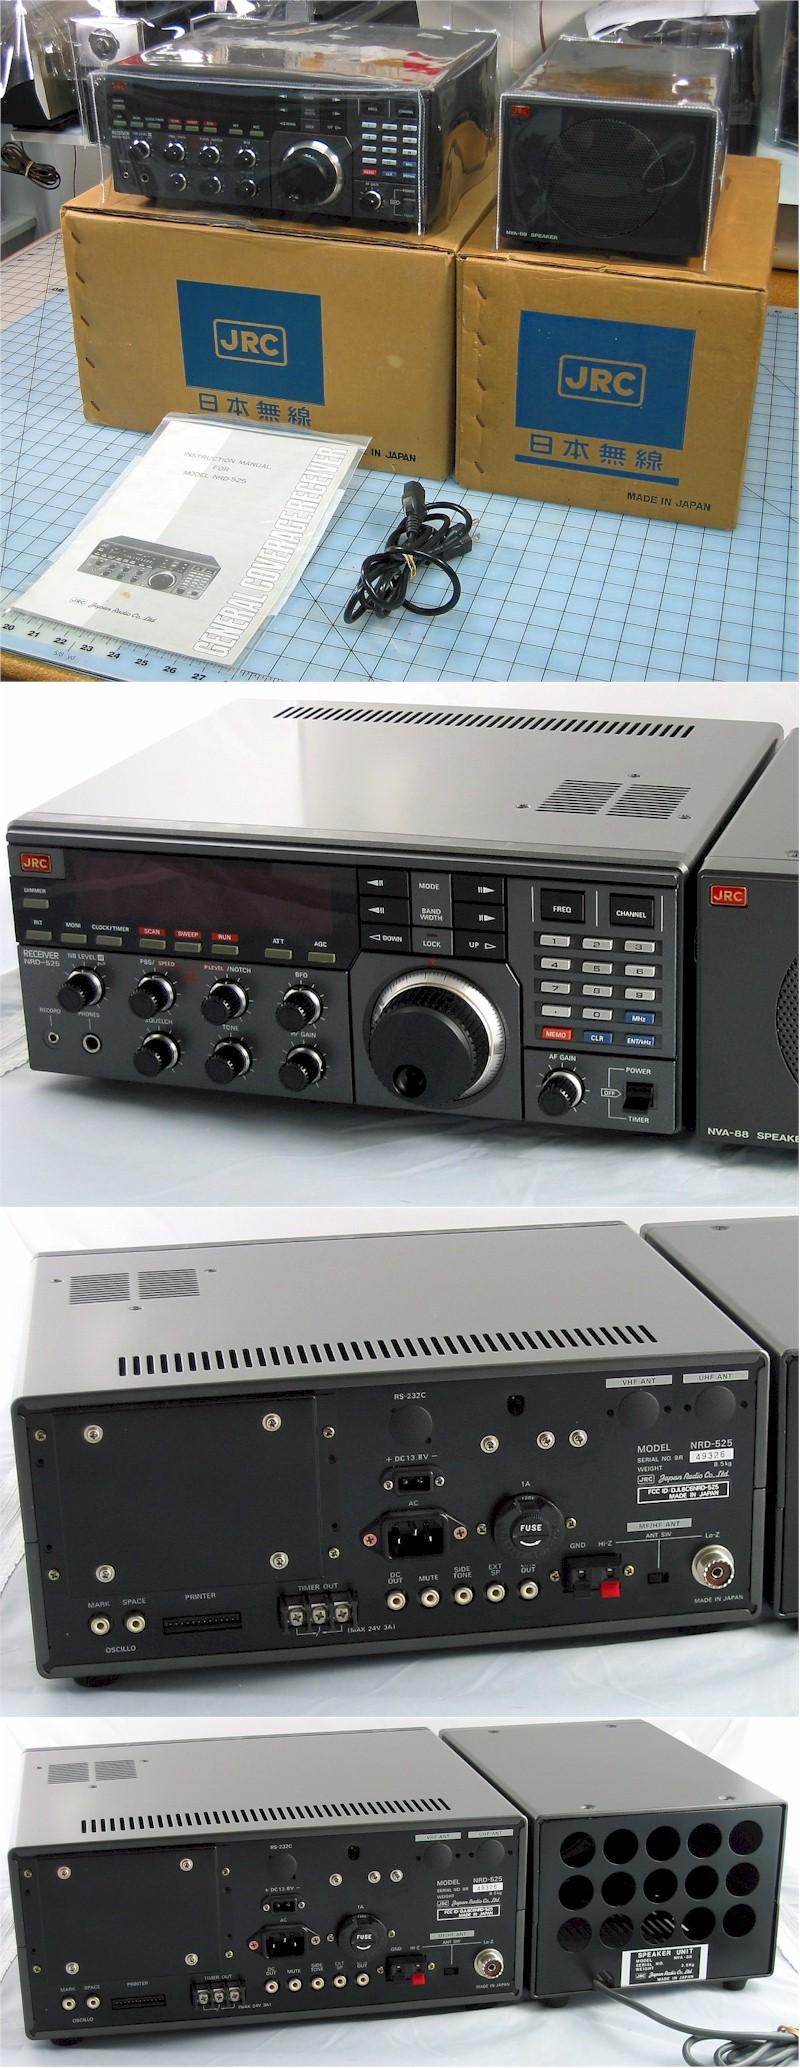 Japan Radio Corp. NRD-525 & NVA-88 (1988)